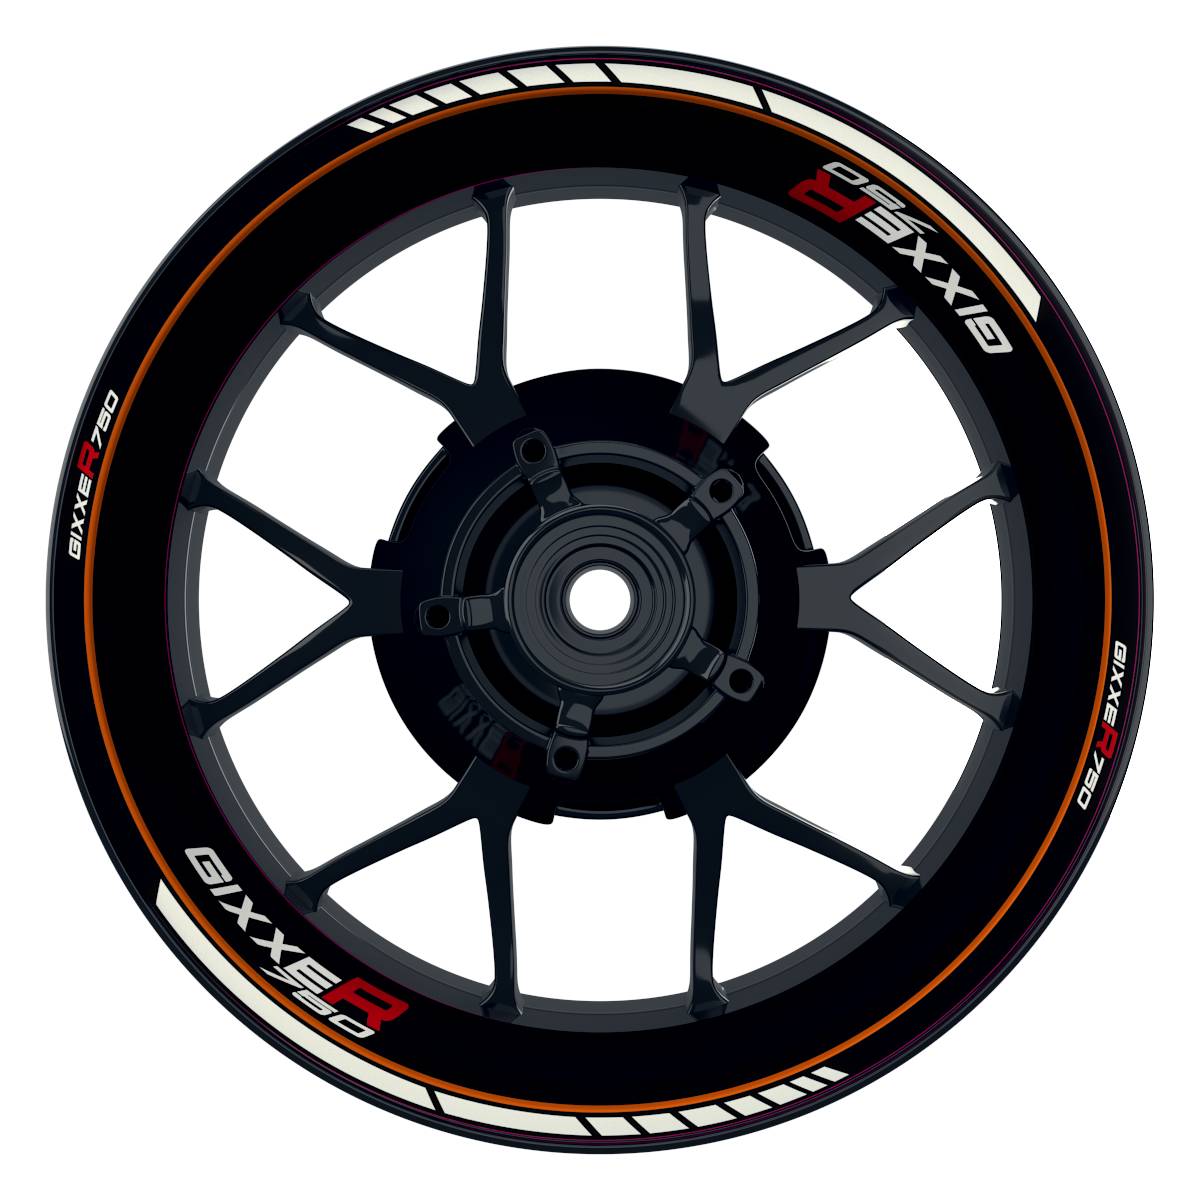 GIXXER750 Clean schwarz orange Wheelsticker Felgenaufkleber